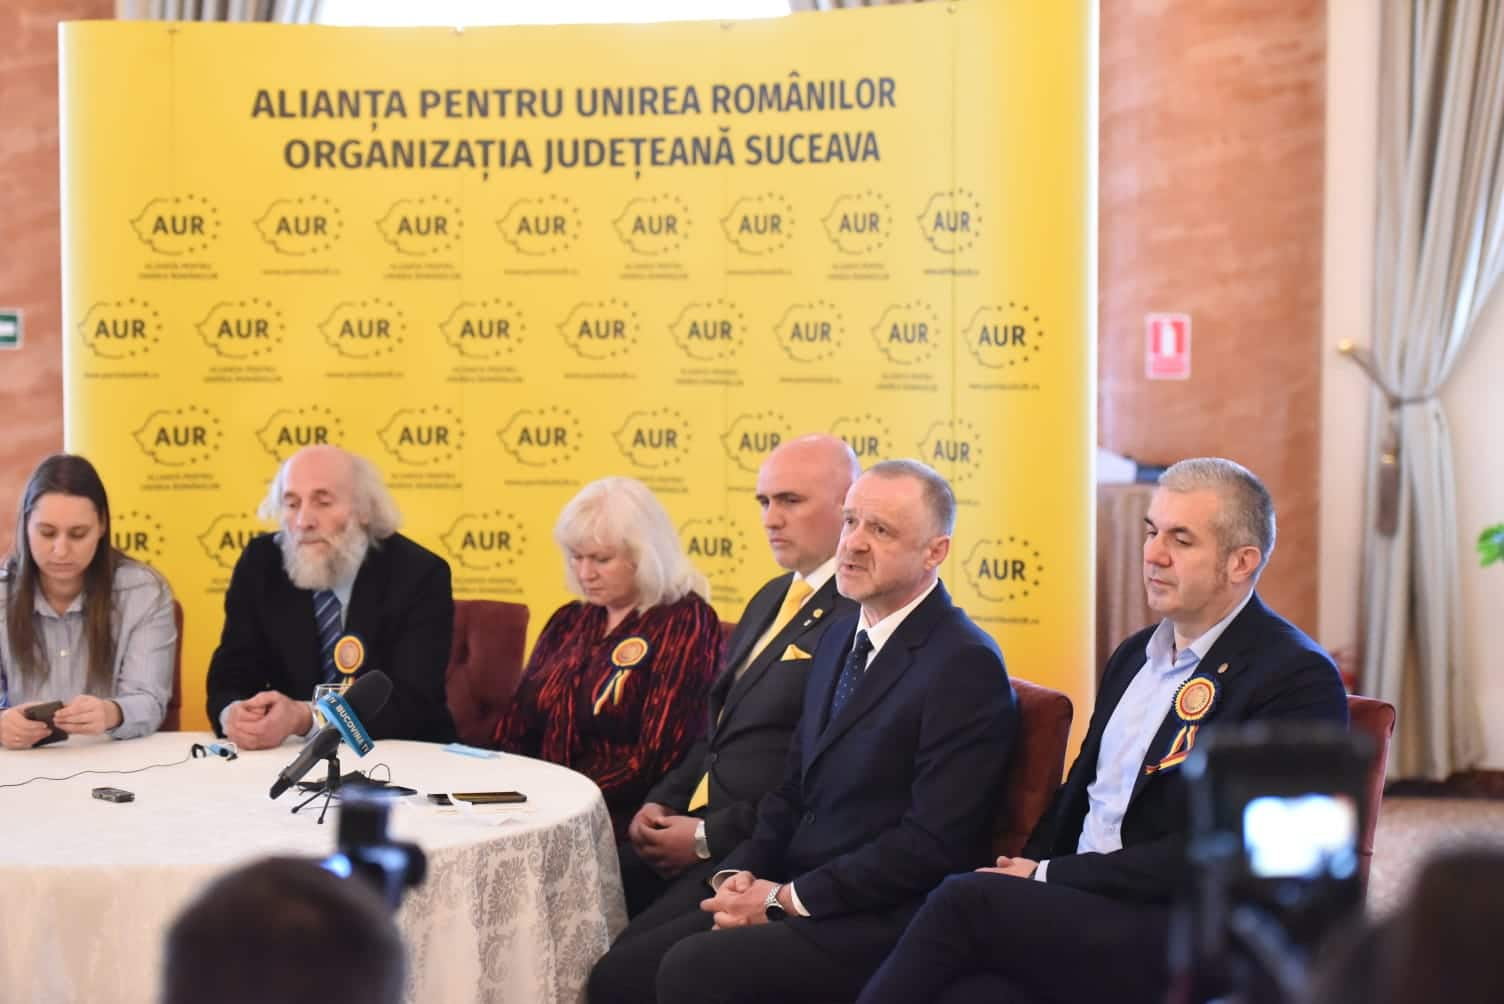 AUR Suceava a organizat un eveniment pentru a comemora implinirea a 80 de ani de la masacrul de la Fantana Alba - News Moldova